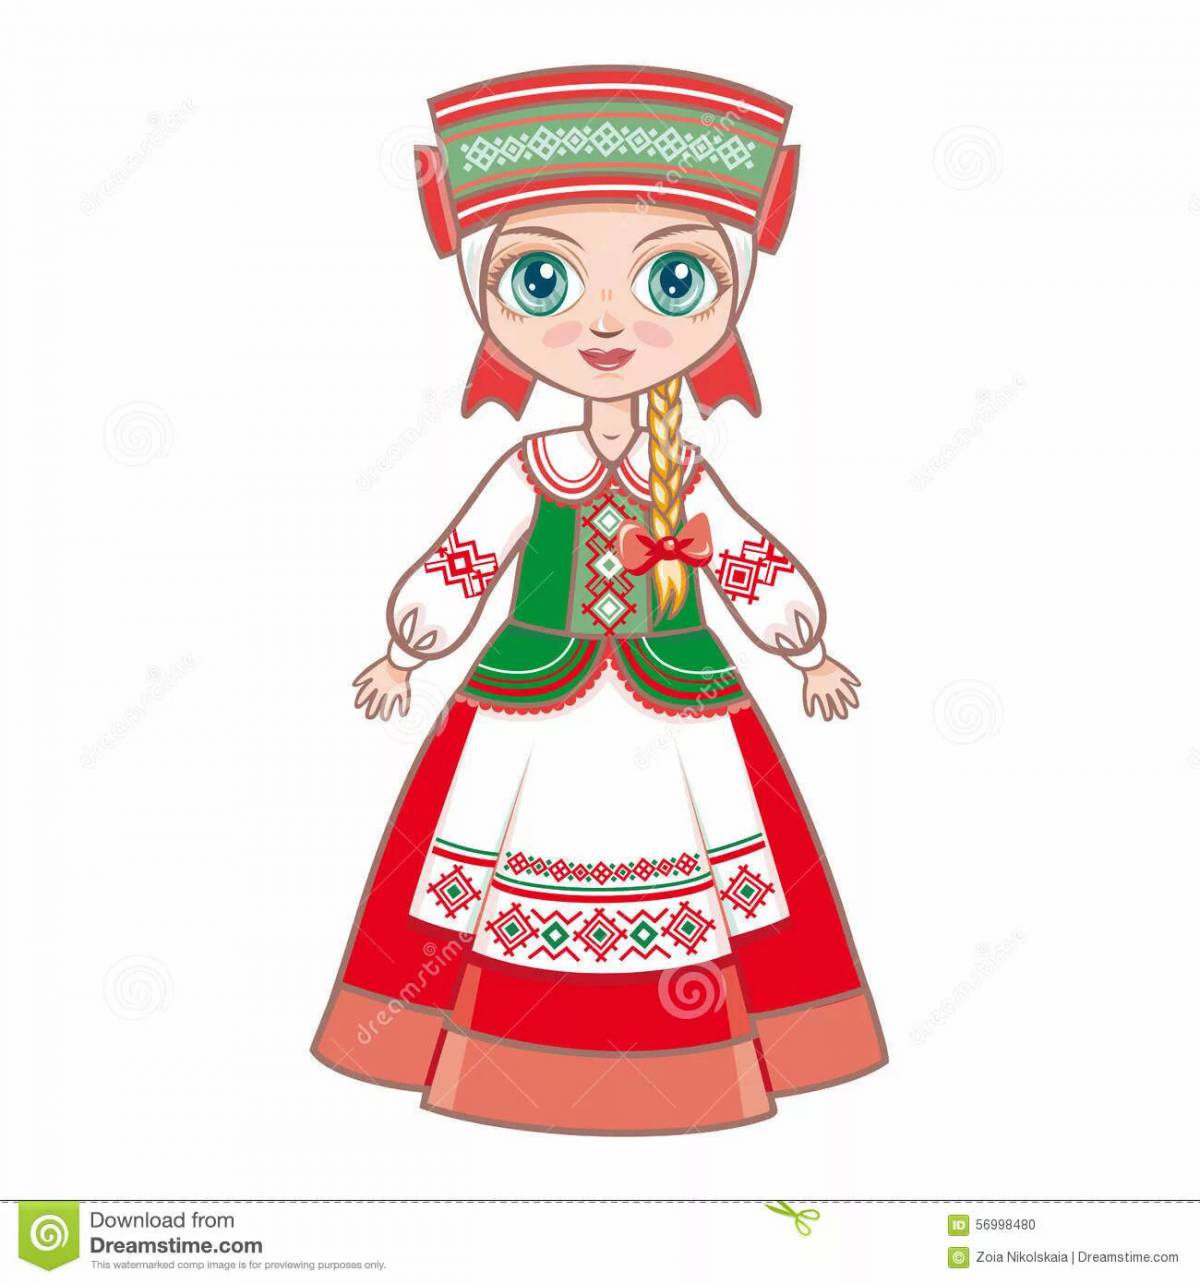 Юмористический белорусский национальный костюм для детей